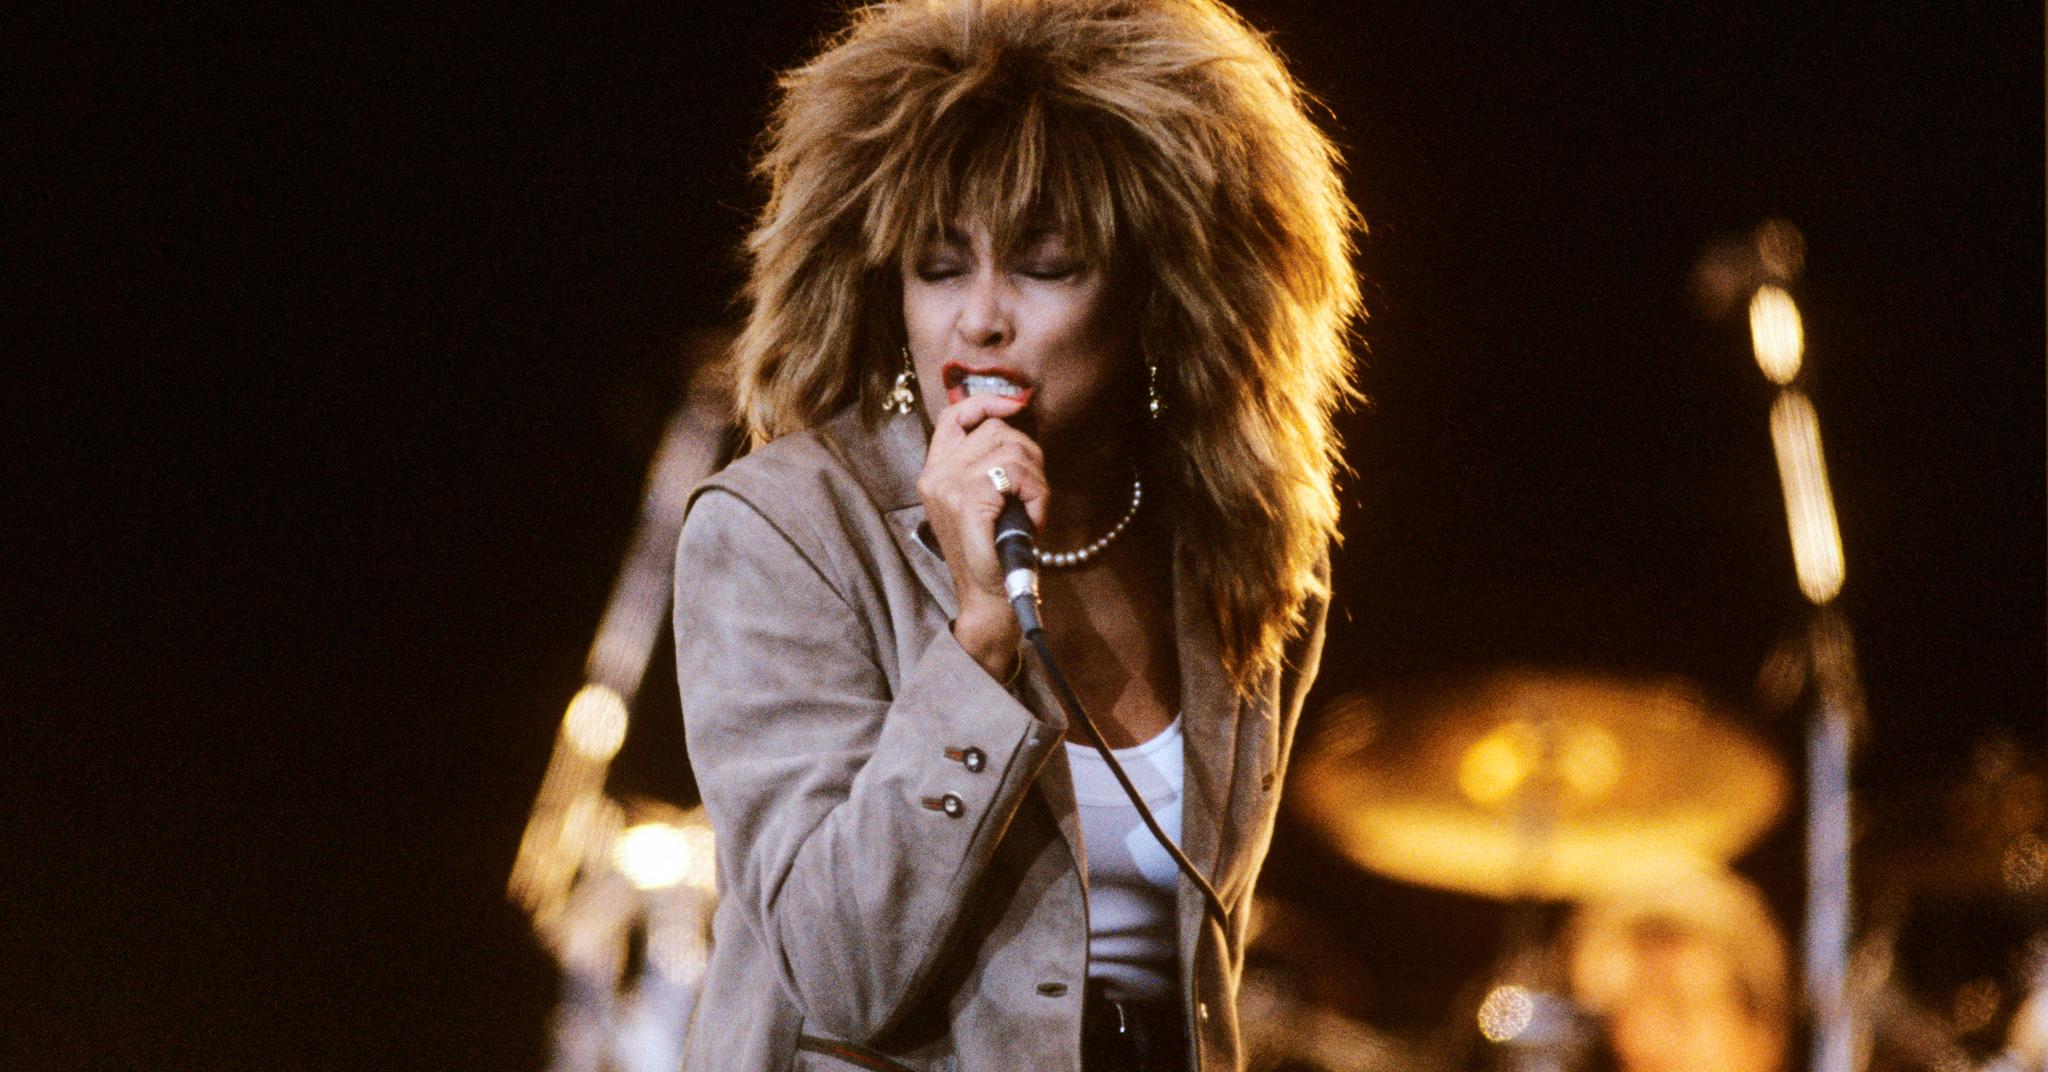 I juni 1987 opptrådte Tina Turner på Valle Hovin i Oslo. Hun var en av verdens største konsertartister i flere tiår. Foto: Morten Hvaal / NTB